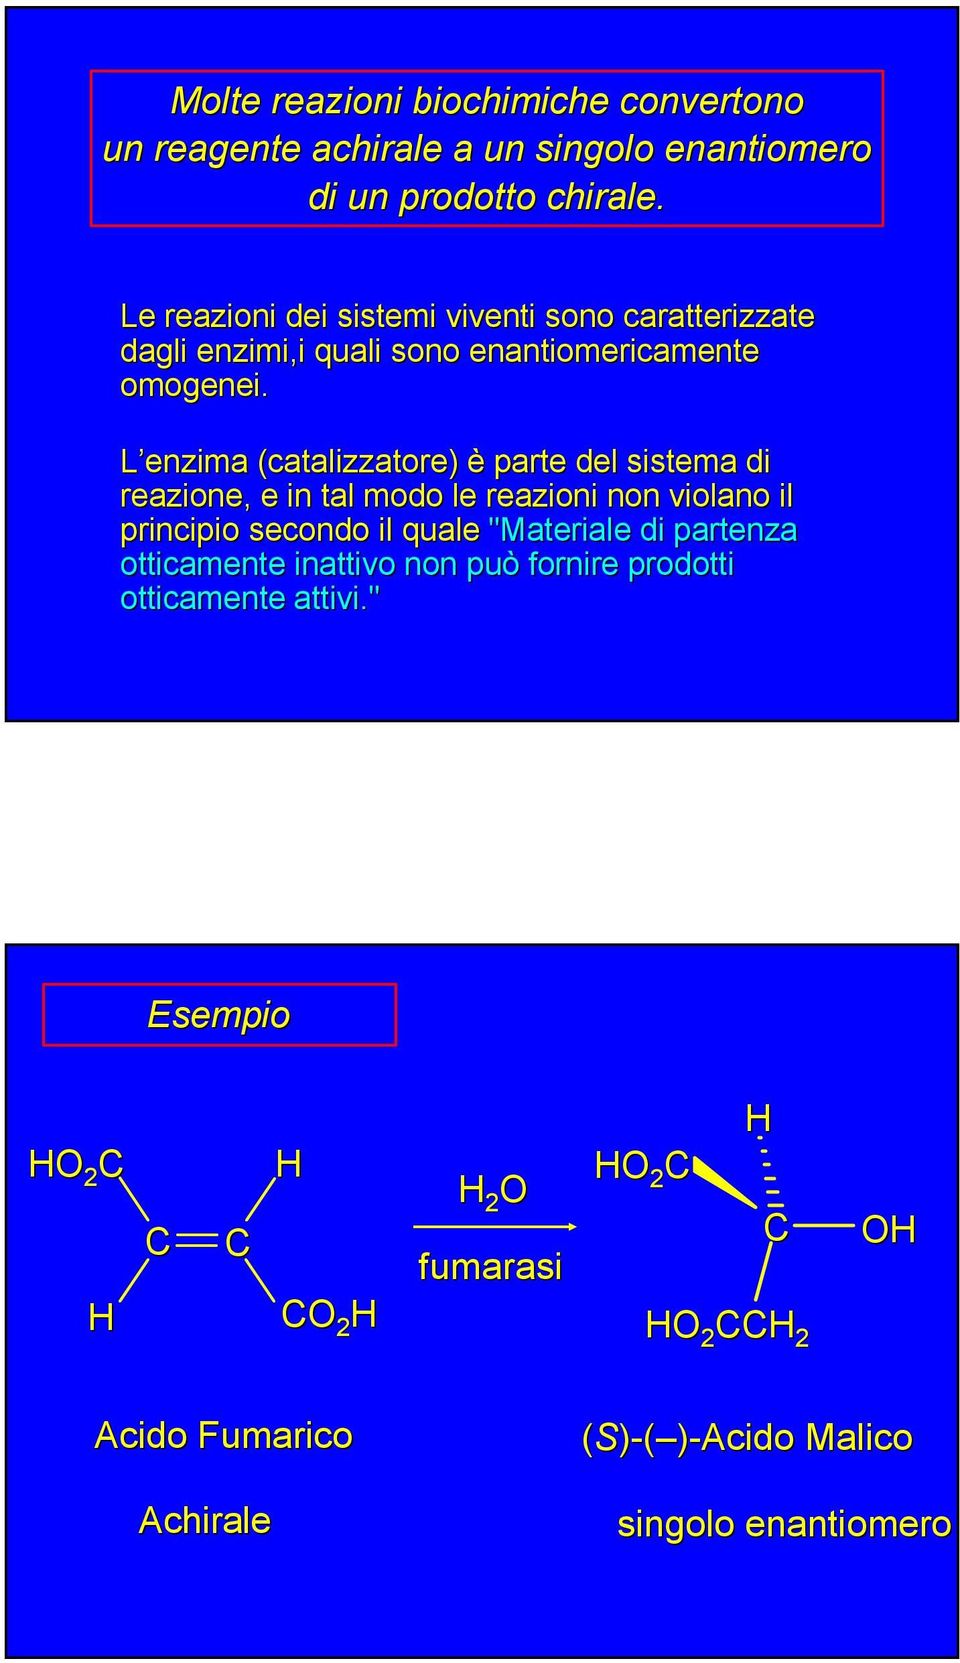 L enzima (catalizzatore) è parte del sistema di reazione, e in tal modo le reazioni non violano il principio secondo il quale "Materiale